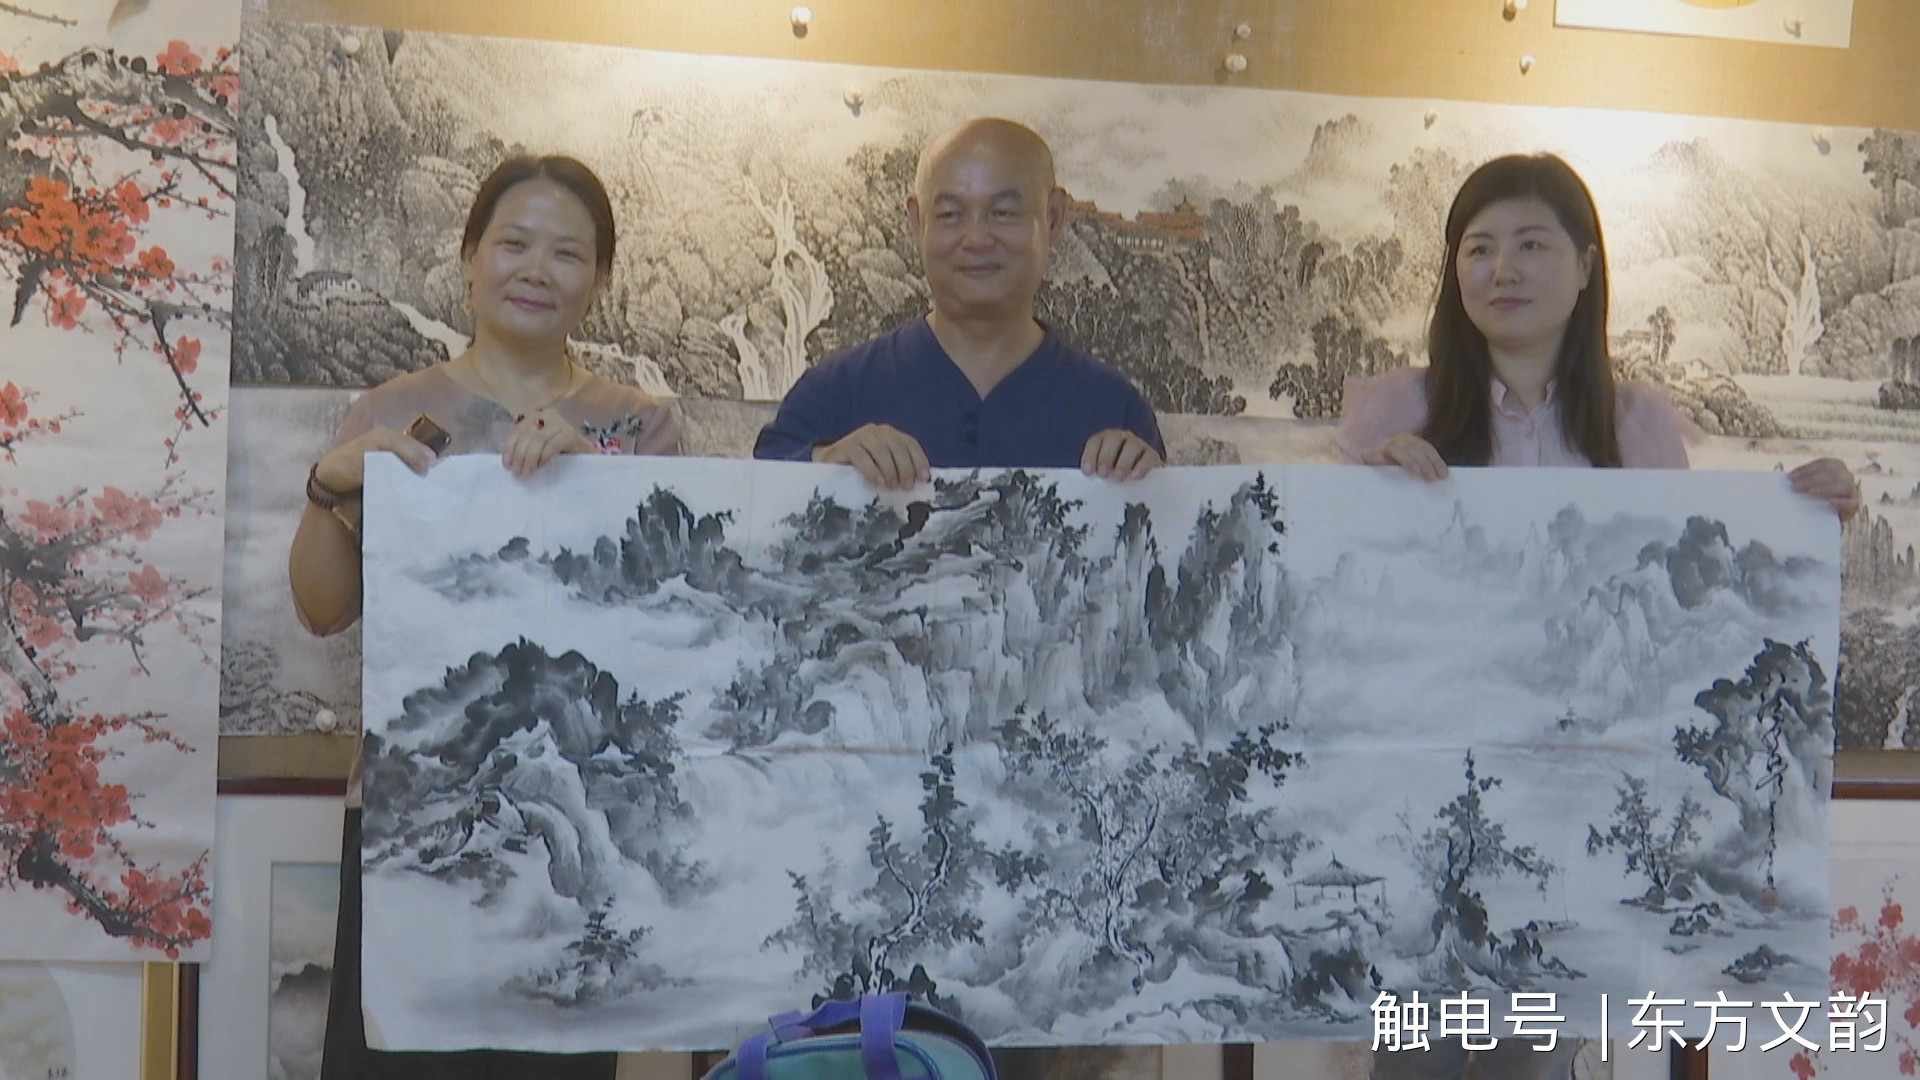 台湾南菁艺术学院院长柯沛鸿向铜陵金陵画院赠画 